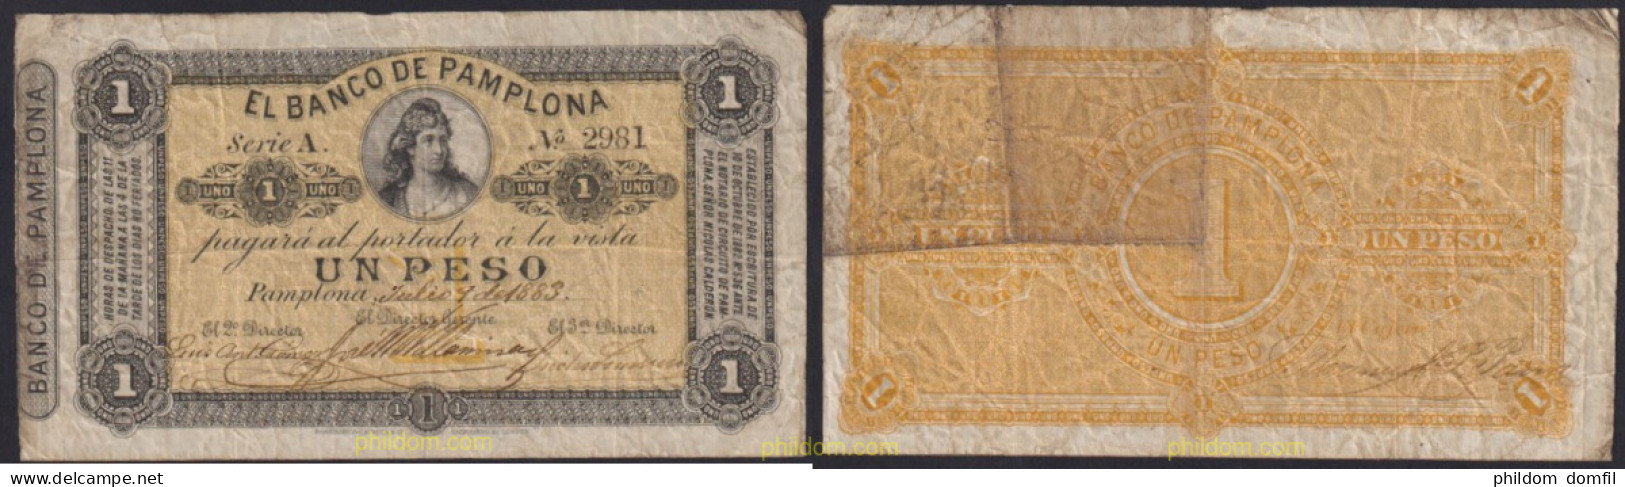 4335 COLOMBIA 1883 COLOMBIA BANCO DE PAMPLONA 1 PESO 1883 - Colombia